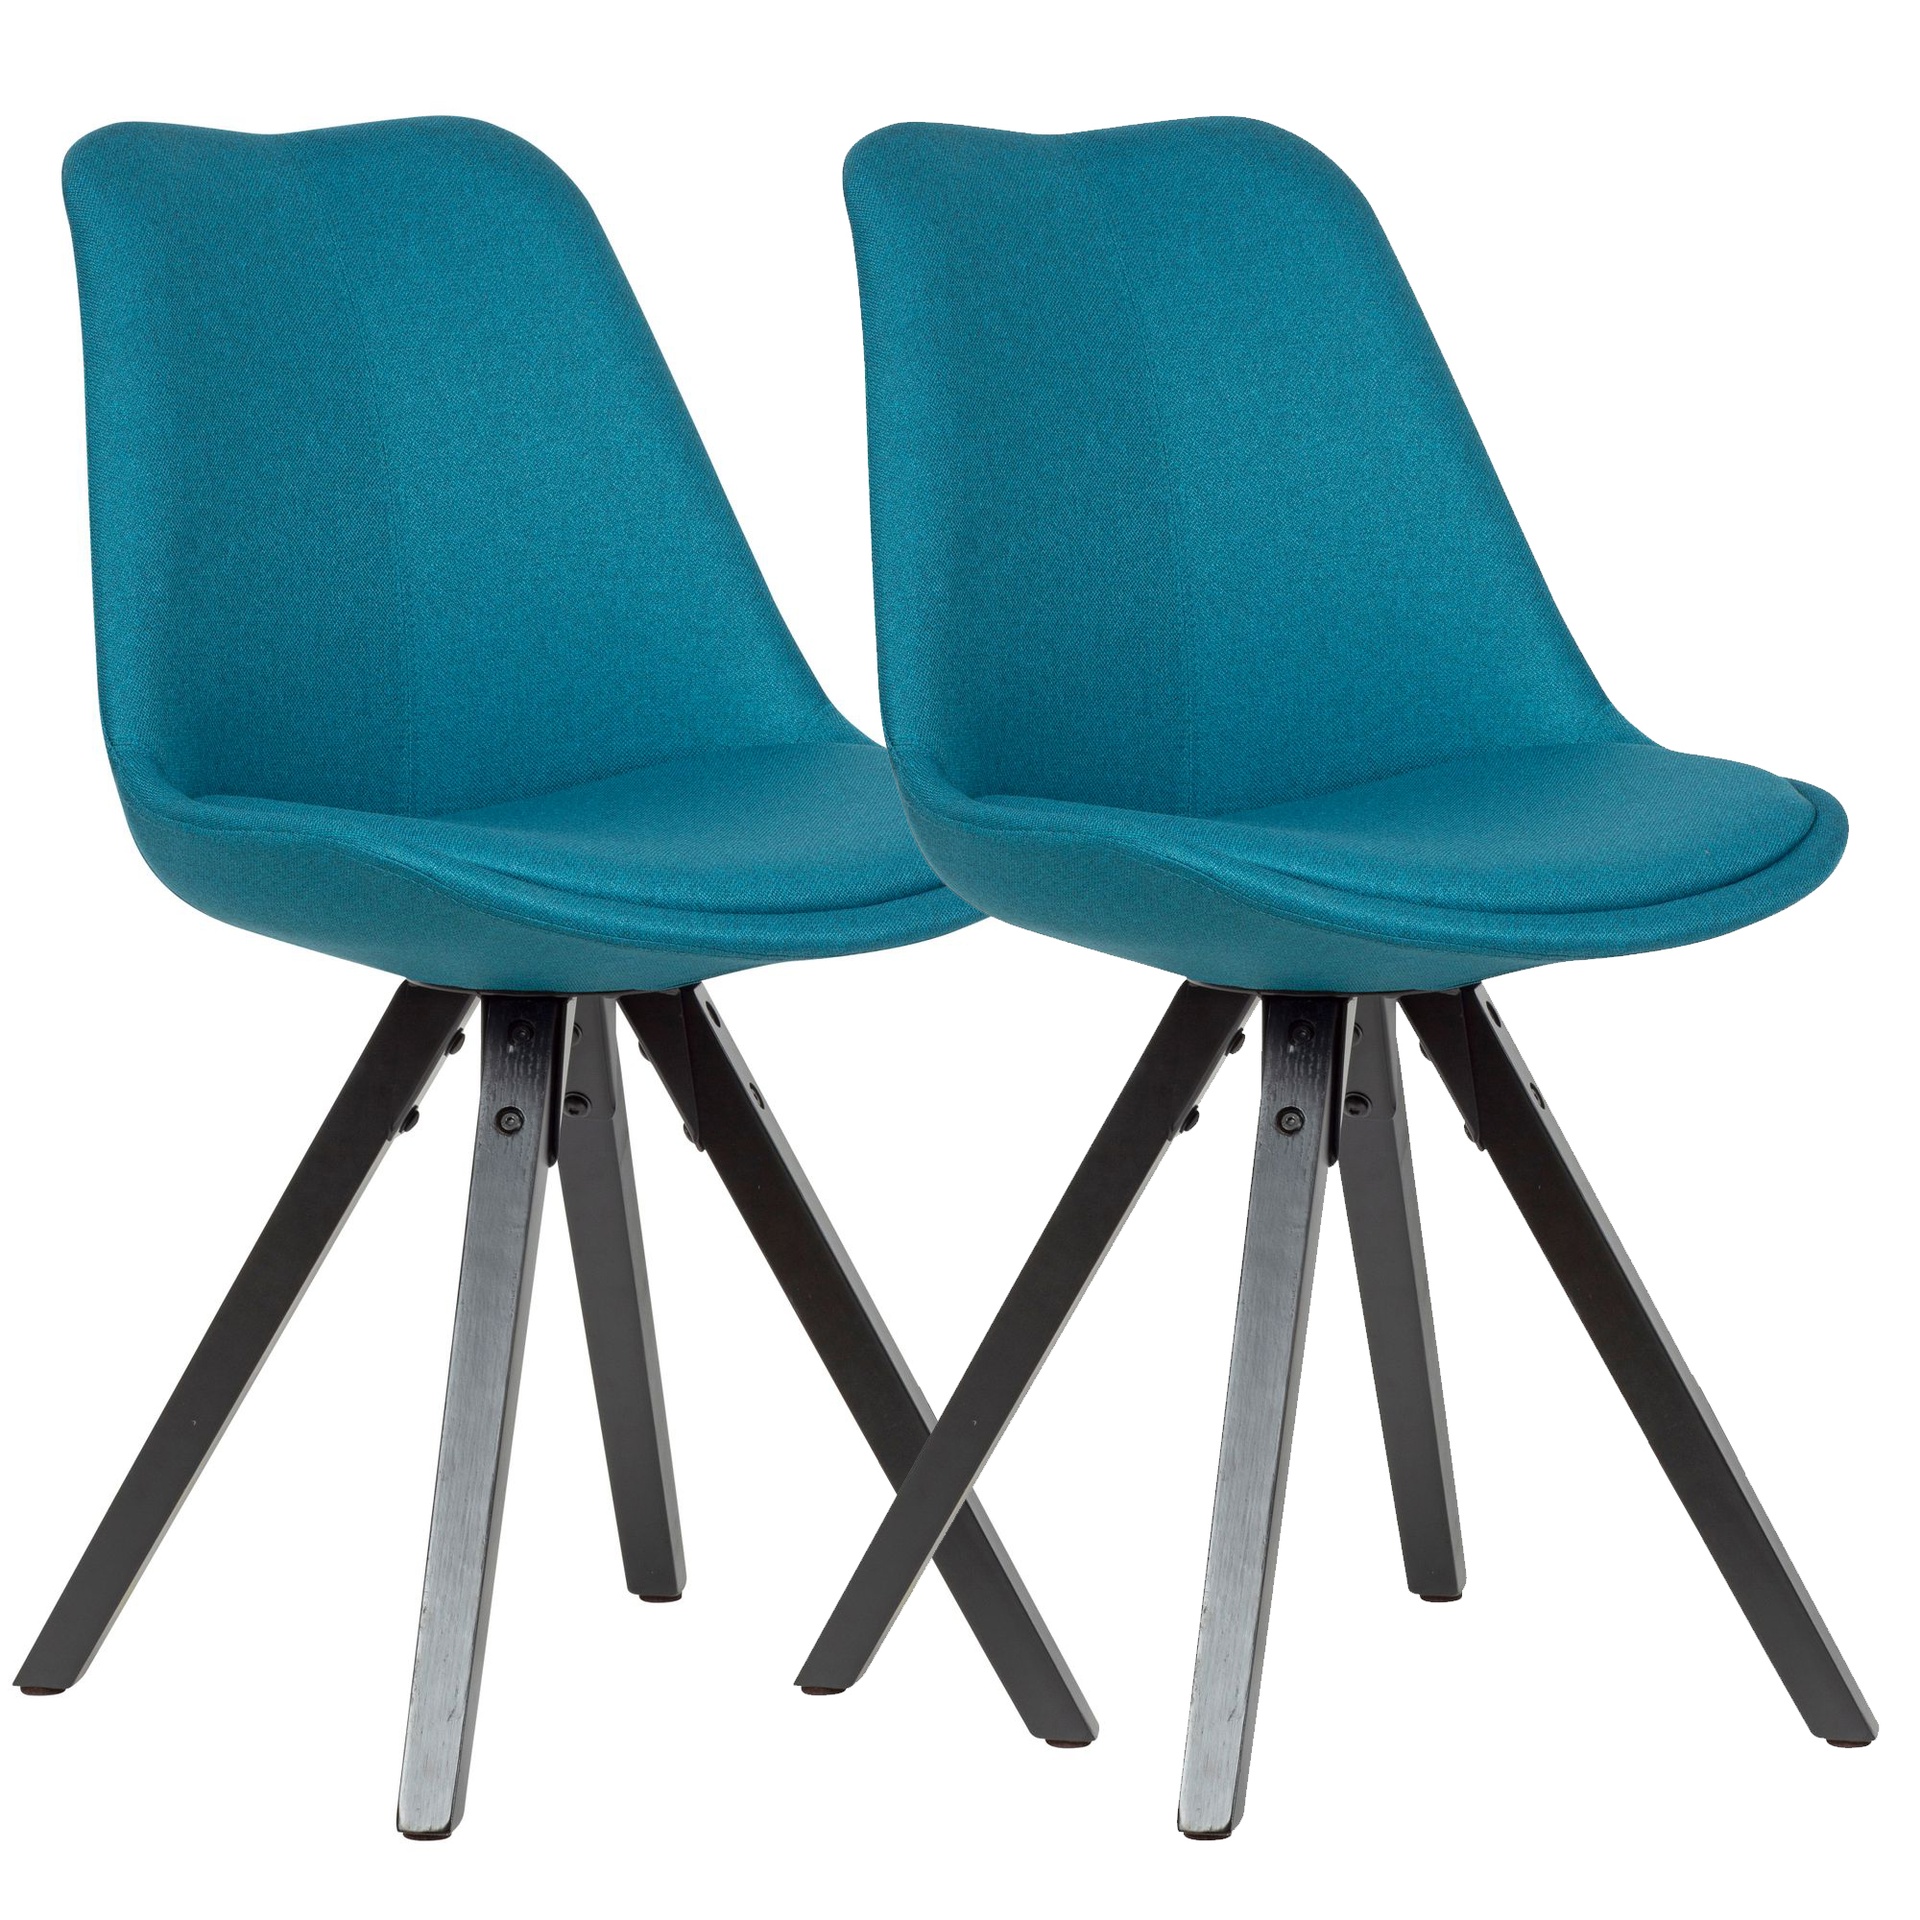 [A10018] Lot de 2 chaises de salle à manger pétrole avec pieds noirs, scandinave, avec revêtement en tissu, rembourrées